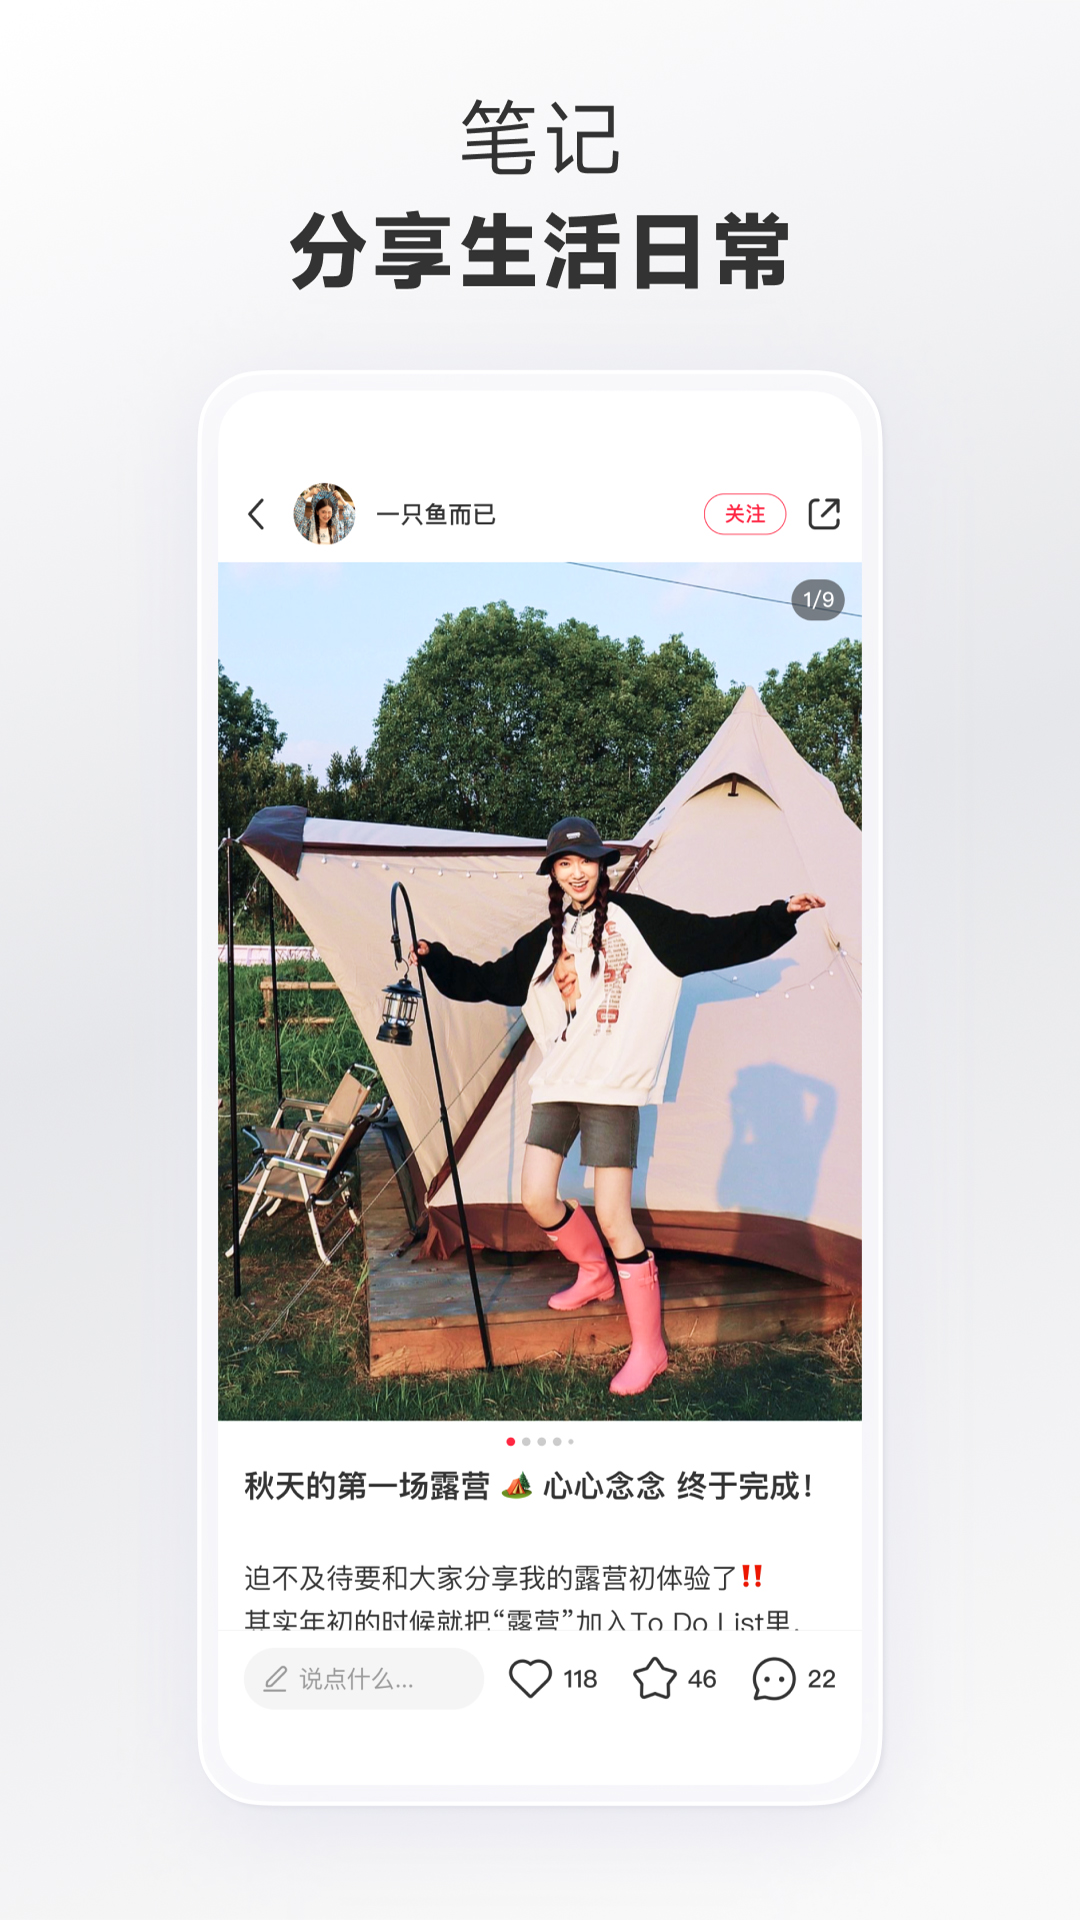 小红书app下载安装免费最新版